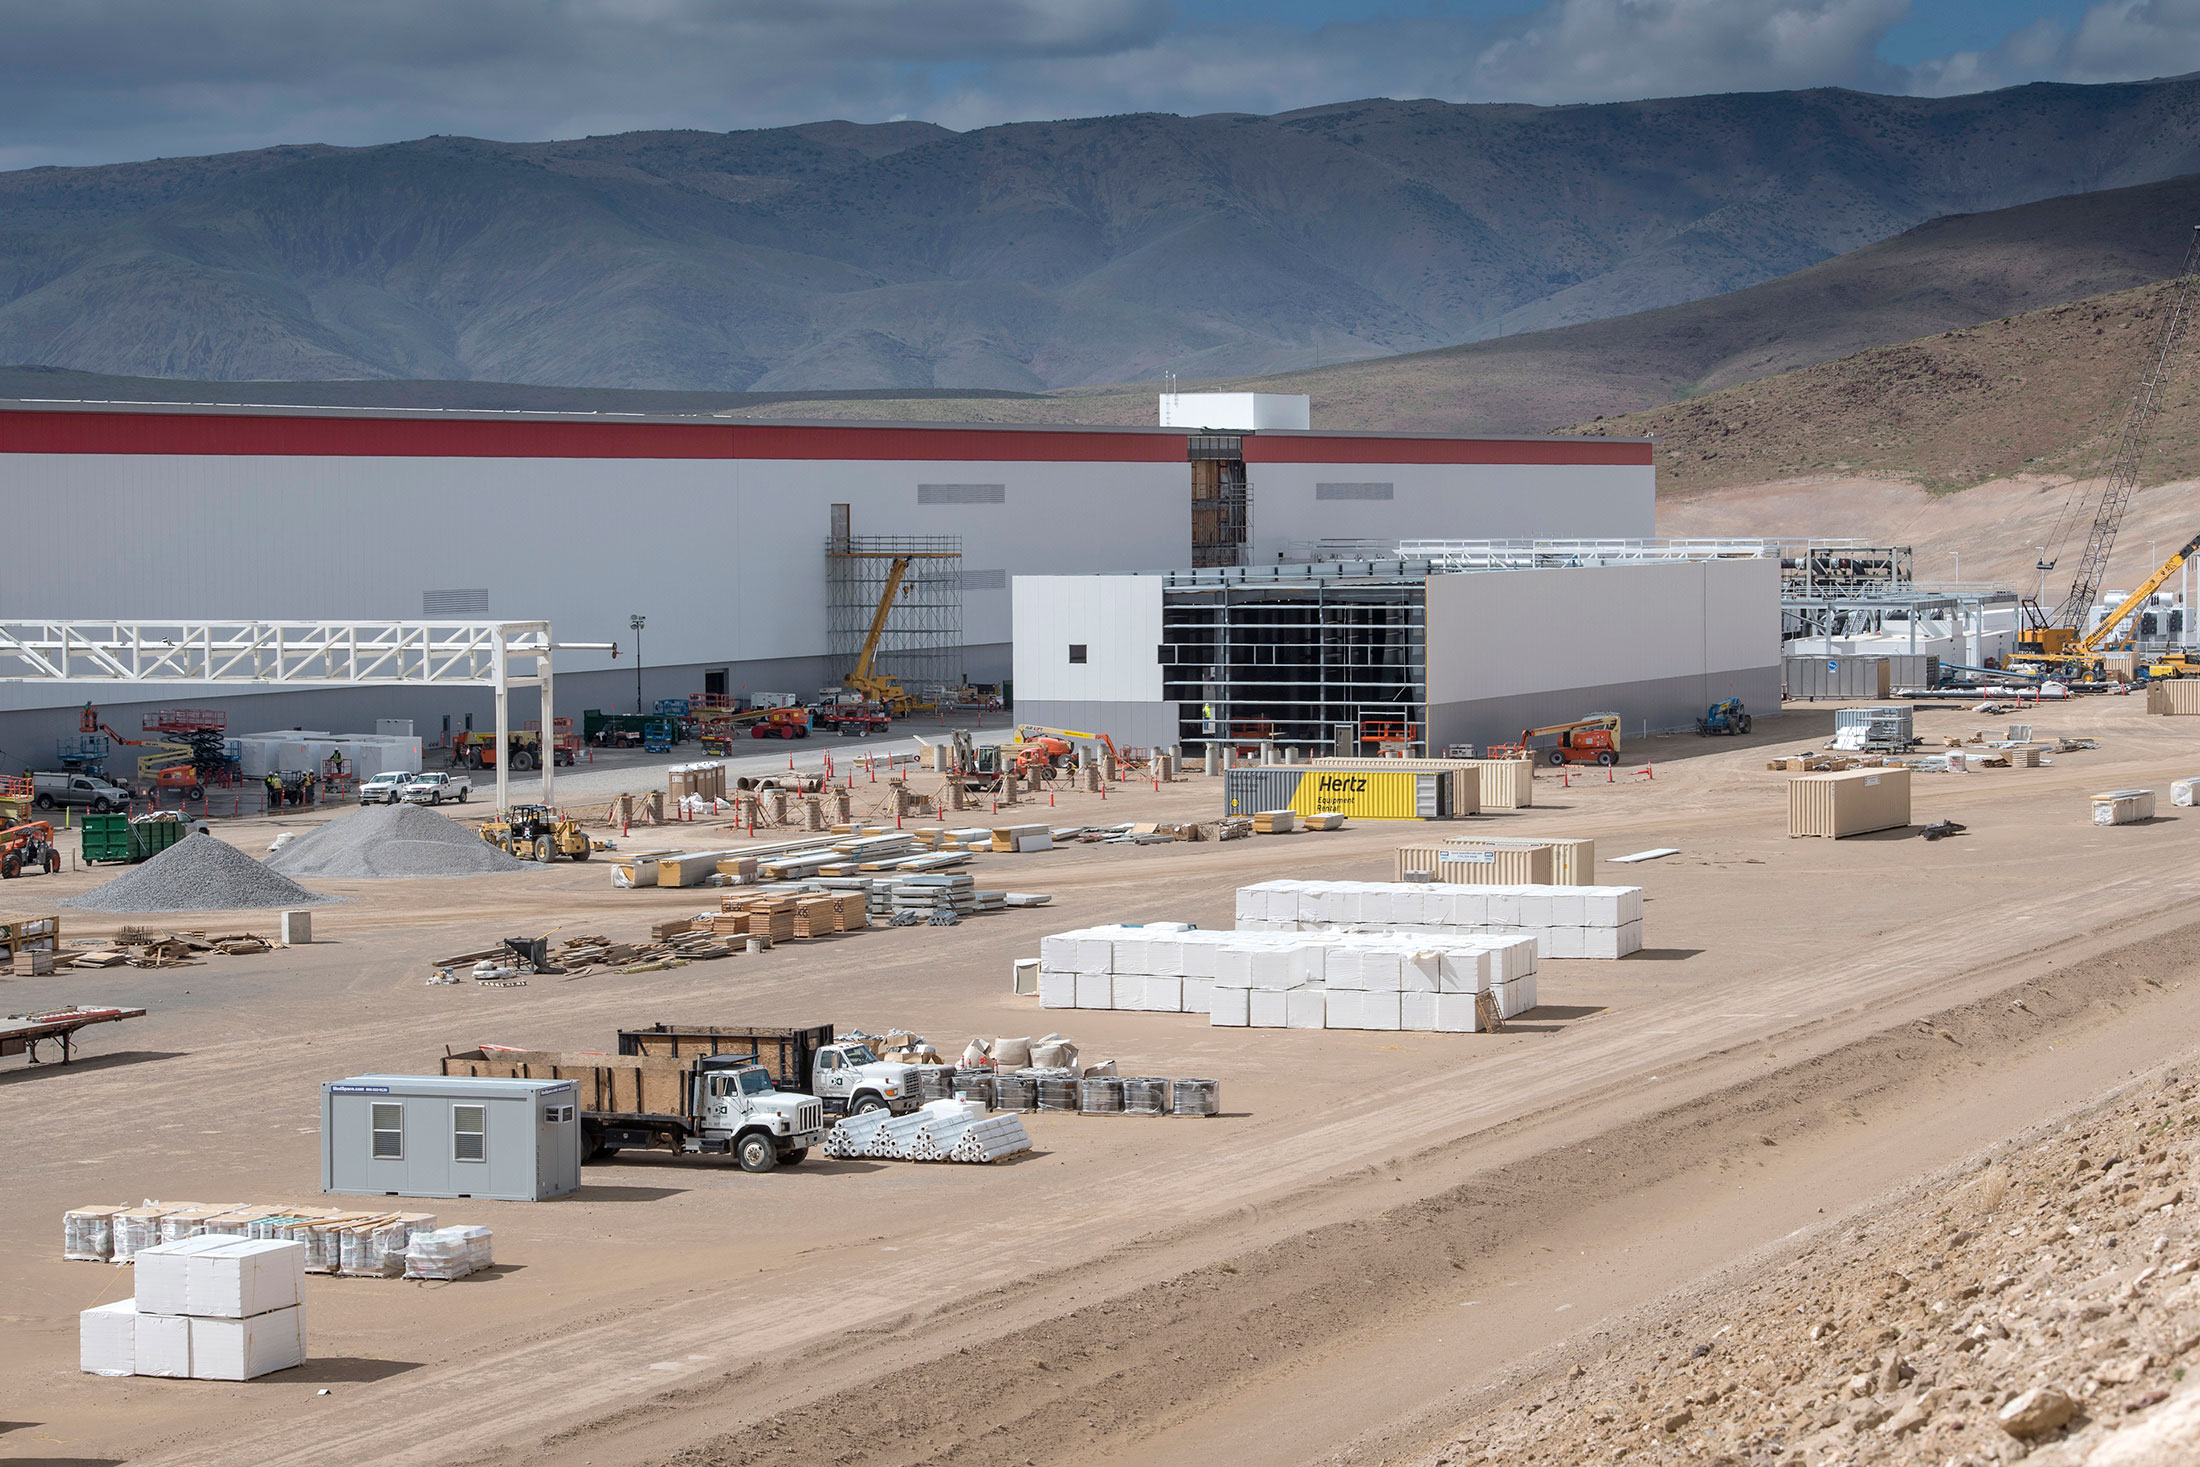 Tesla'nın devasa Gigafactory tesisinden yeni fotoğraflar var